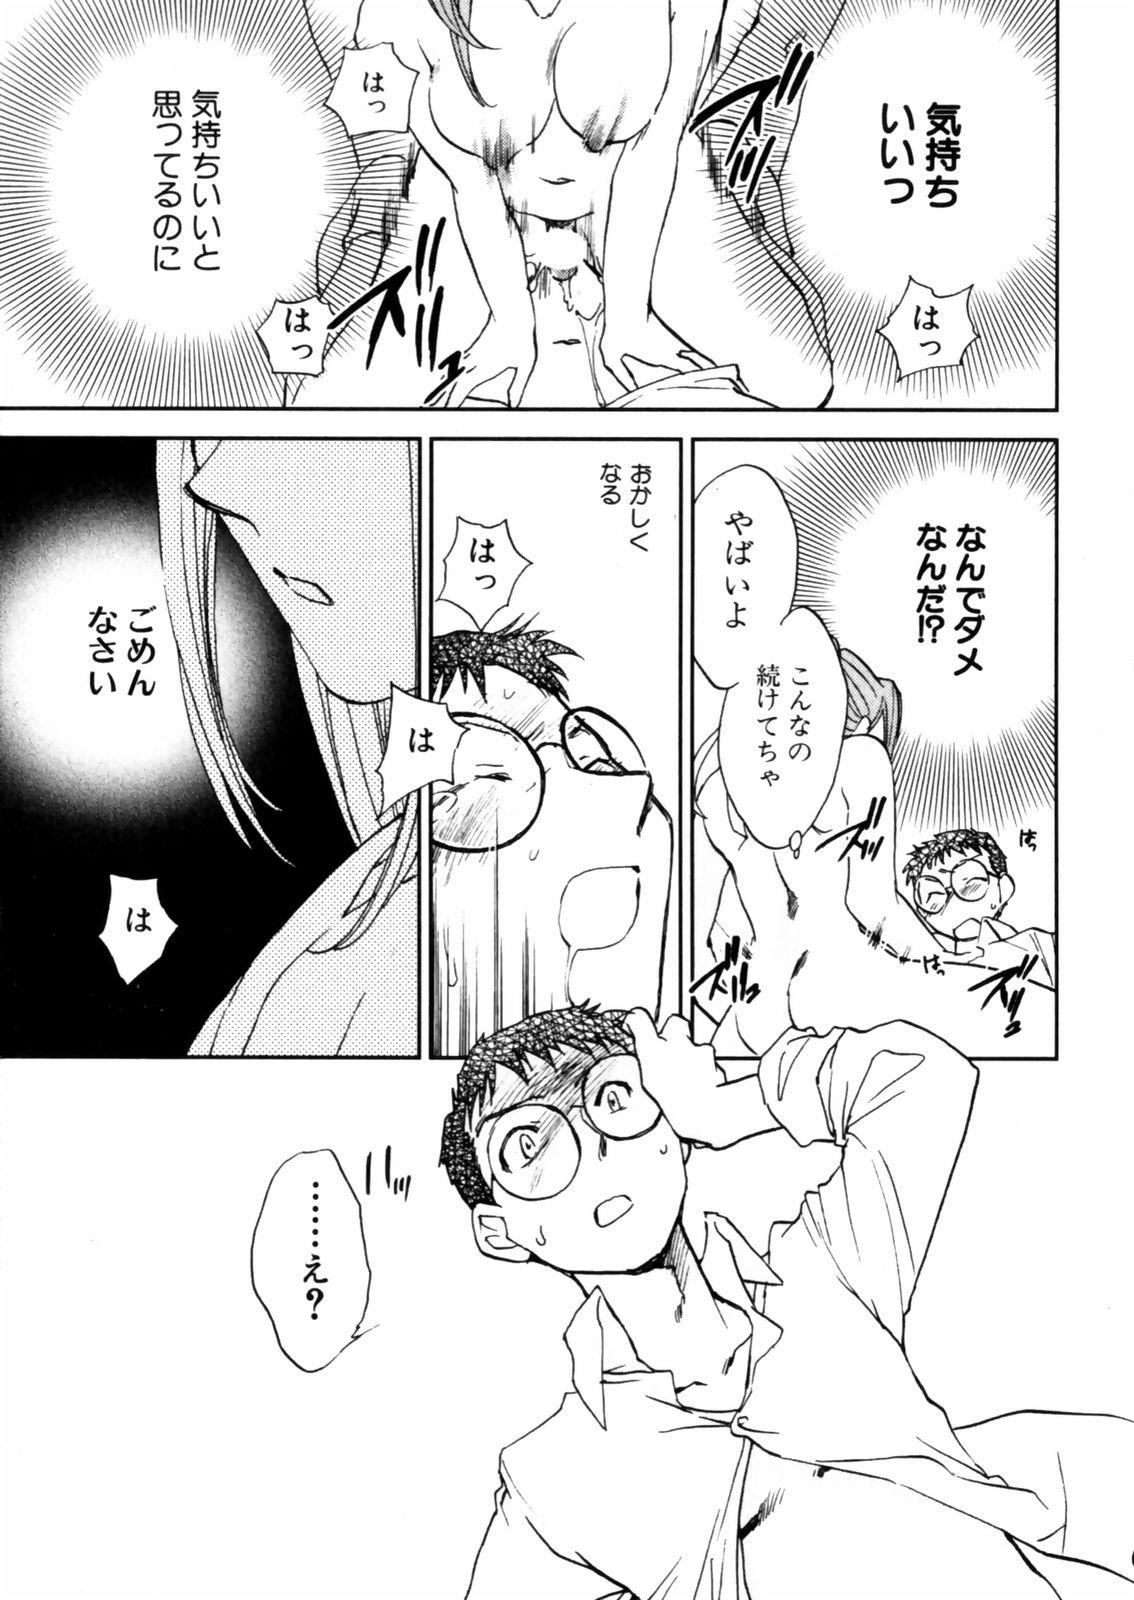 [Okano Ahiru] Hanasake ! Otome Juku (Otome Private Tutoring School) Vol.2 34